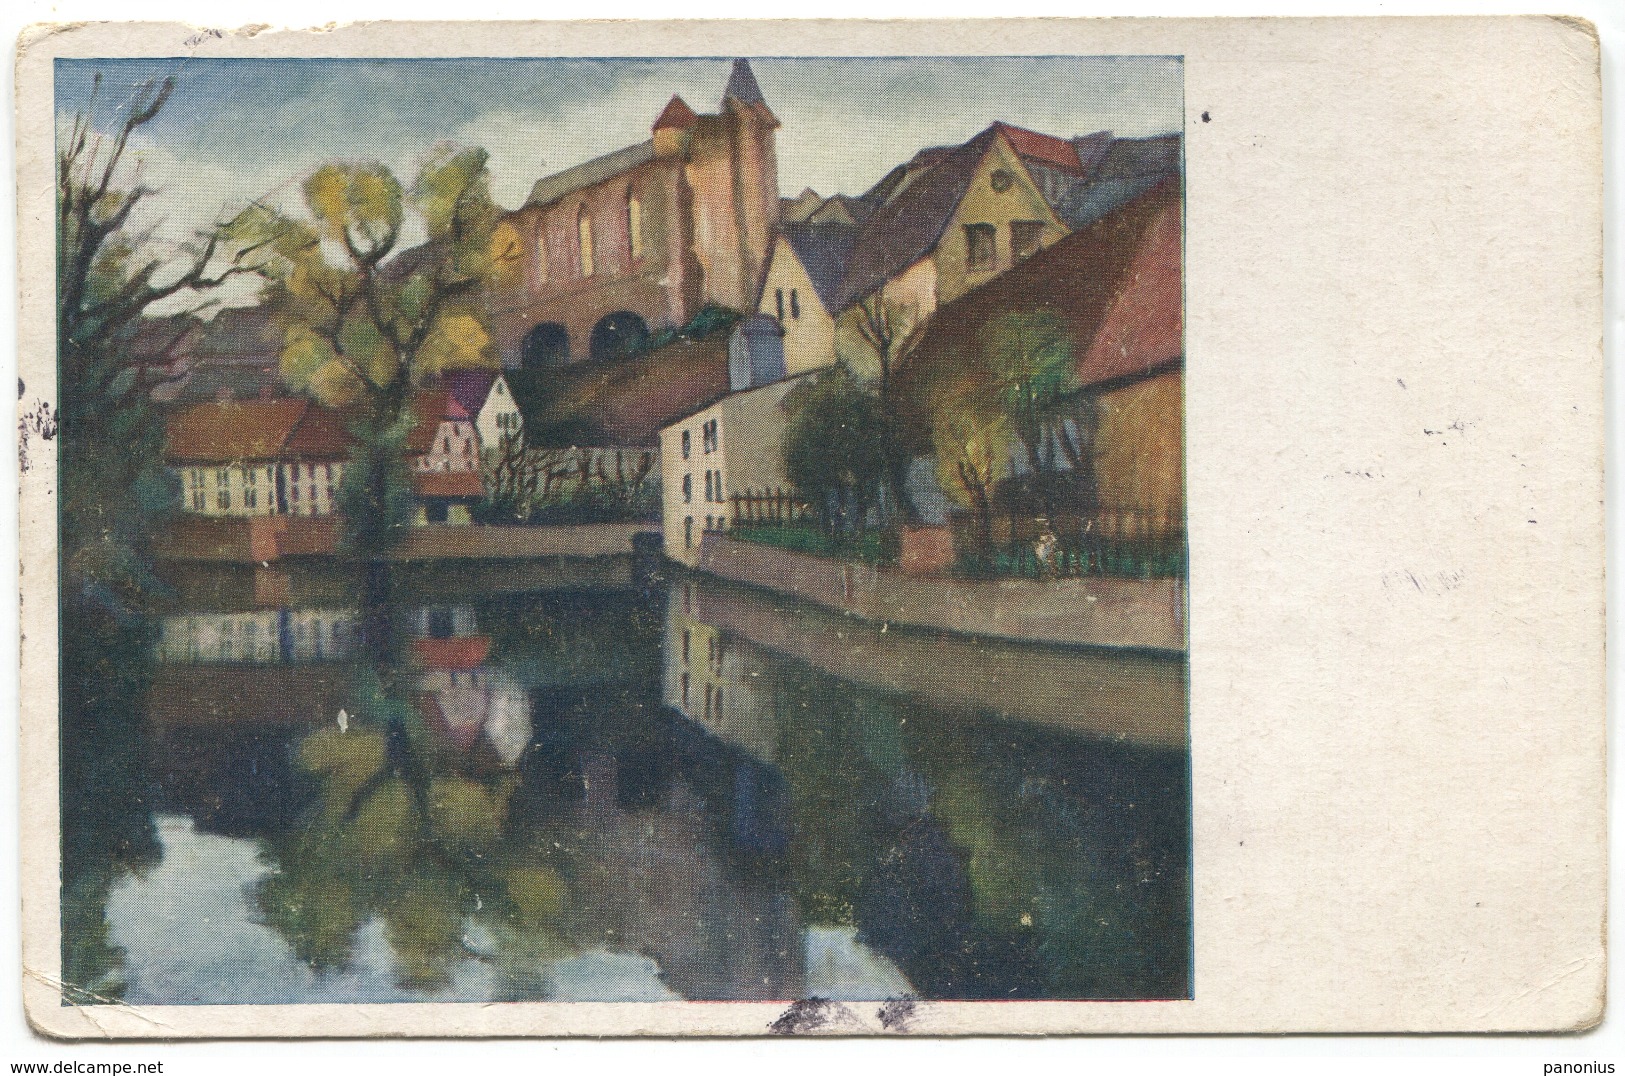 BAUTZEN / BUDYSIN - GERMANY, ART PC, 1934. - Bautzen